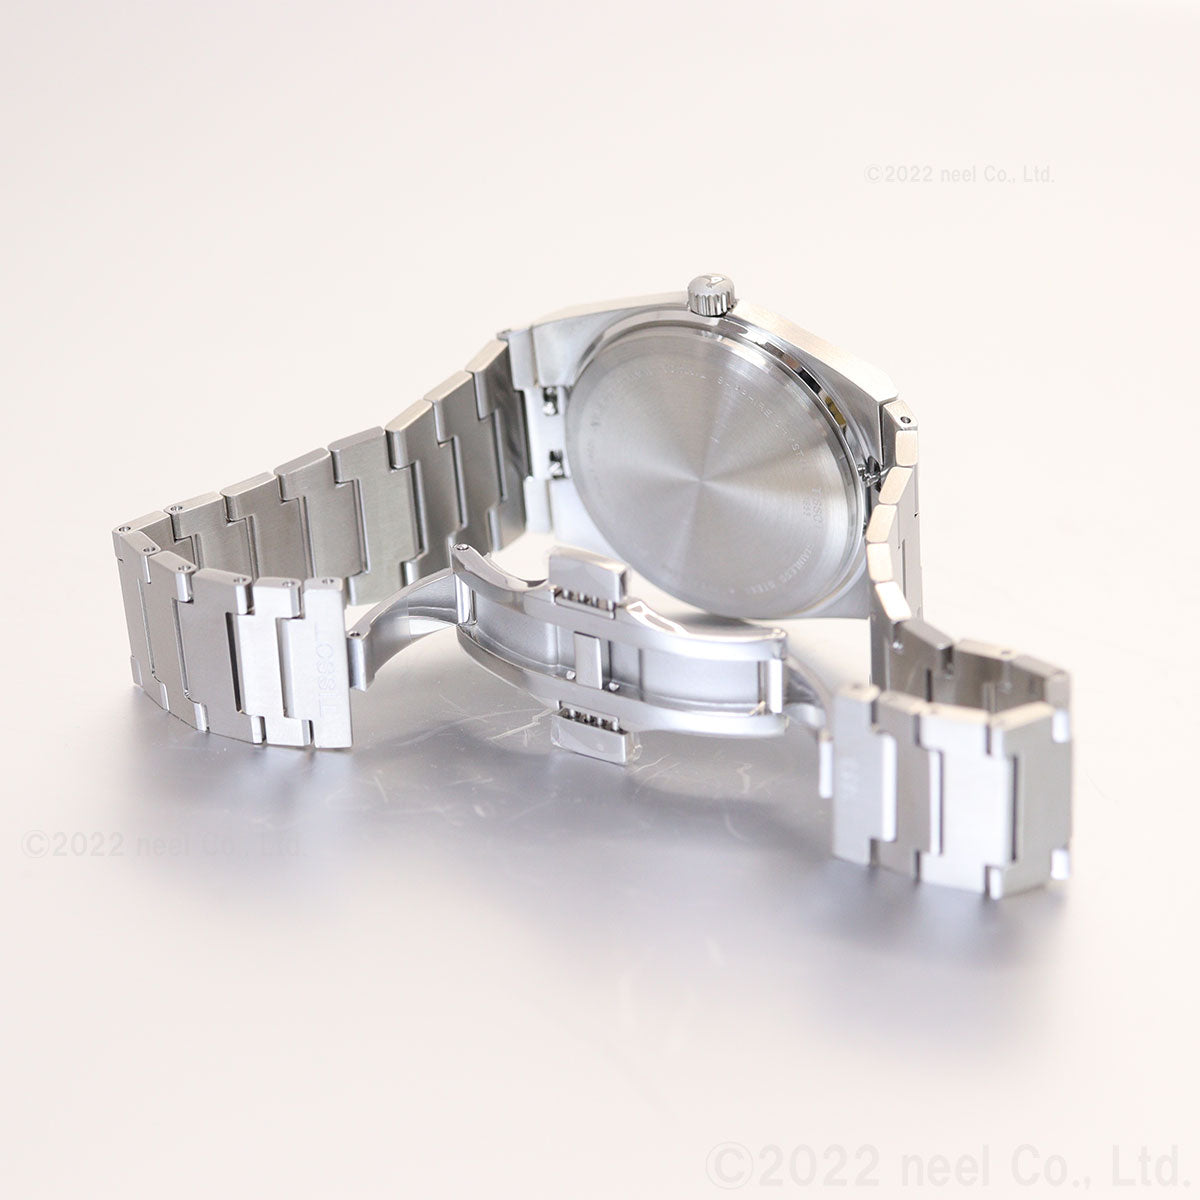 ティソ TISSOT 腕時計 メンズ PRX ピーアールエックス T137.410.11.091.00